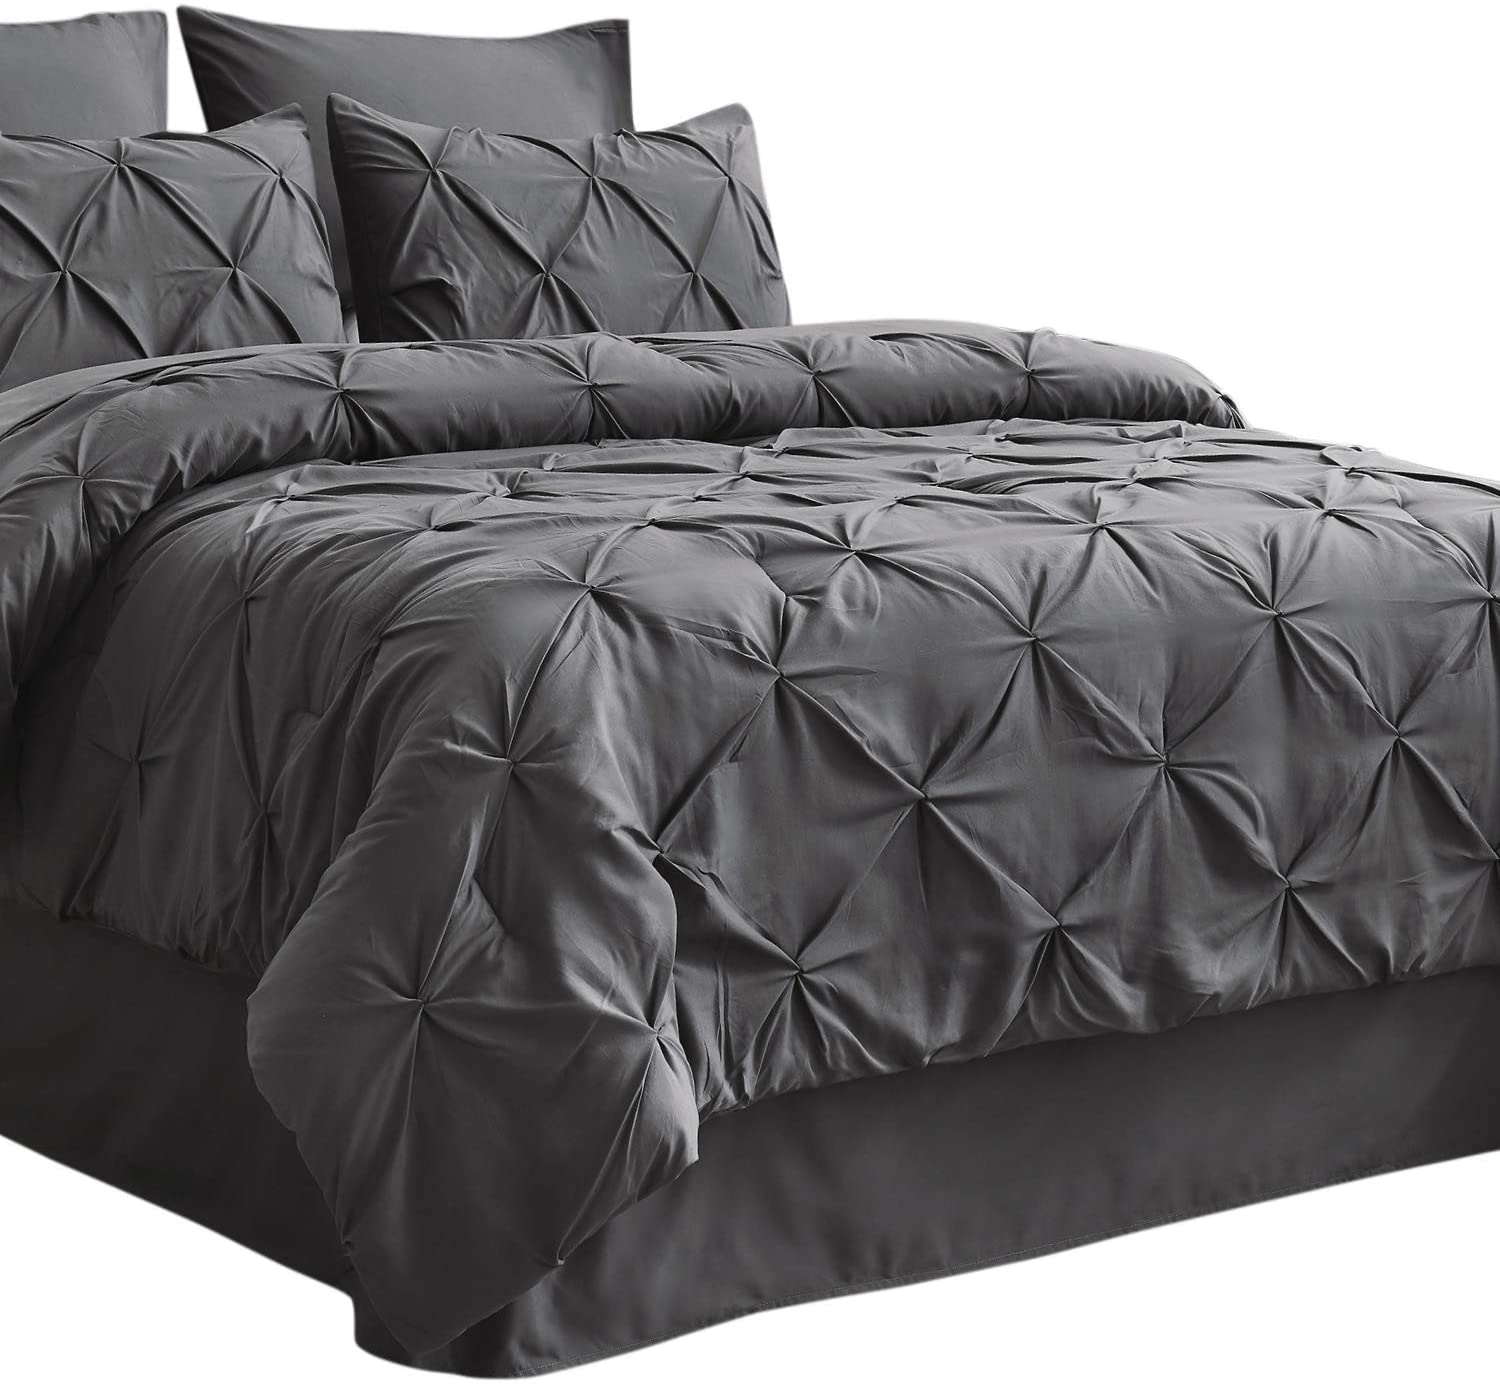 Bedsure Queen Comforter Set 8 Pieces - Pintuck Queen Bed Set, Bed